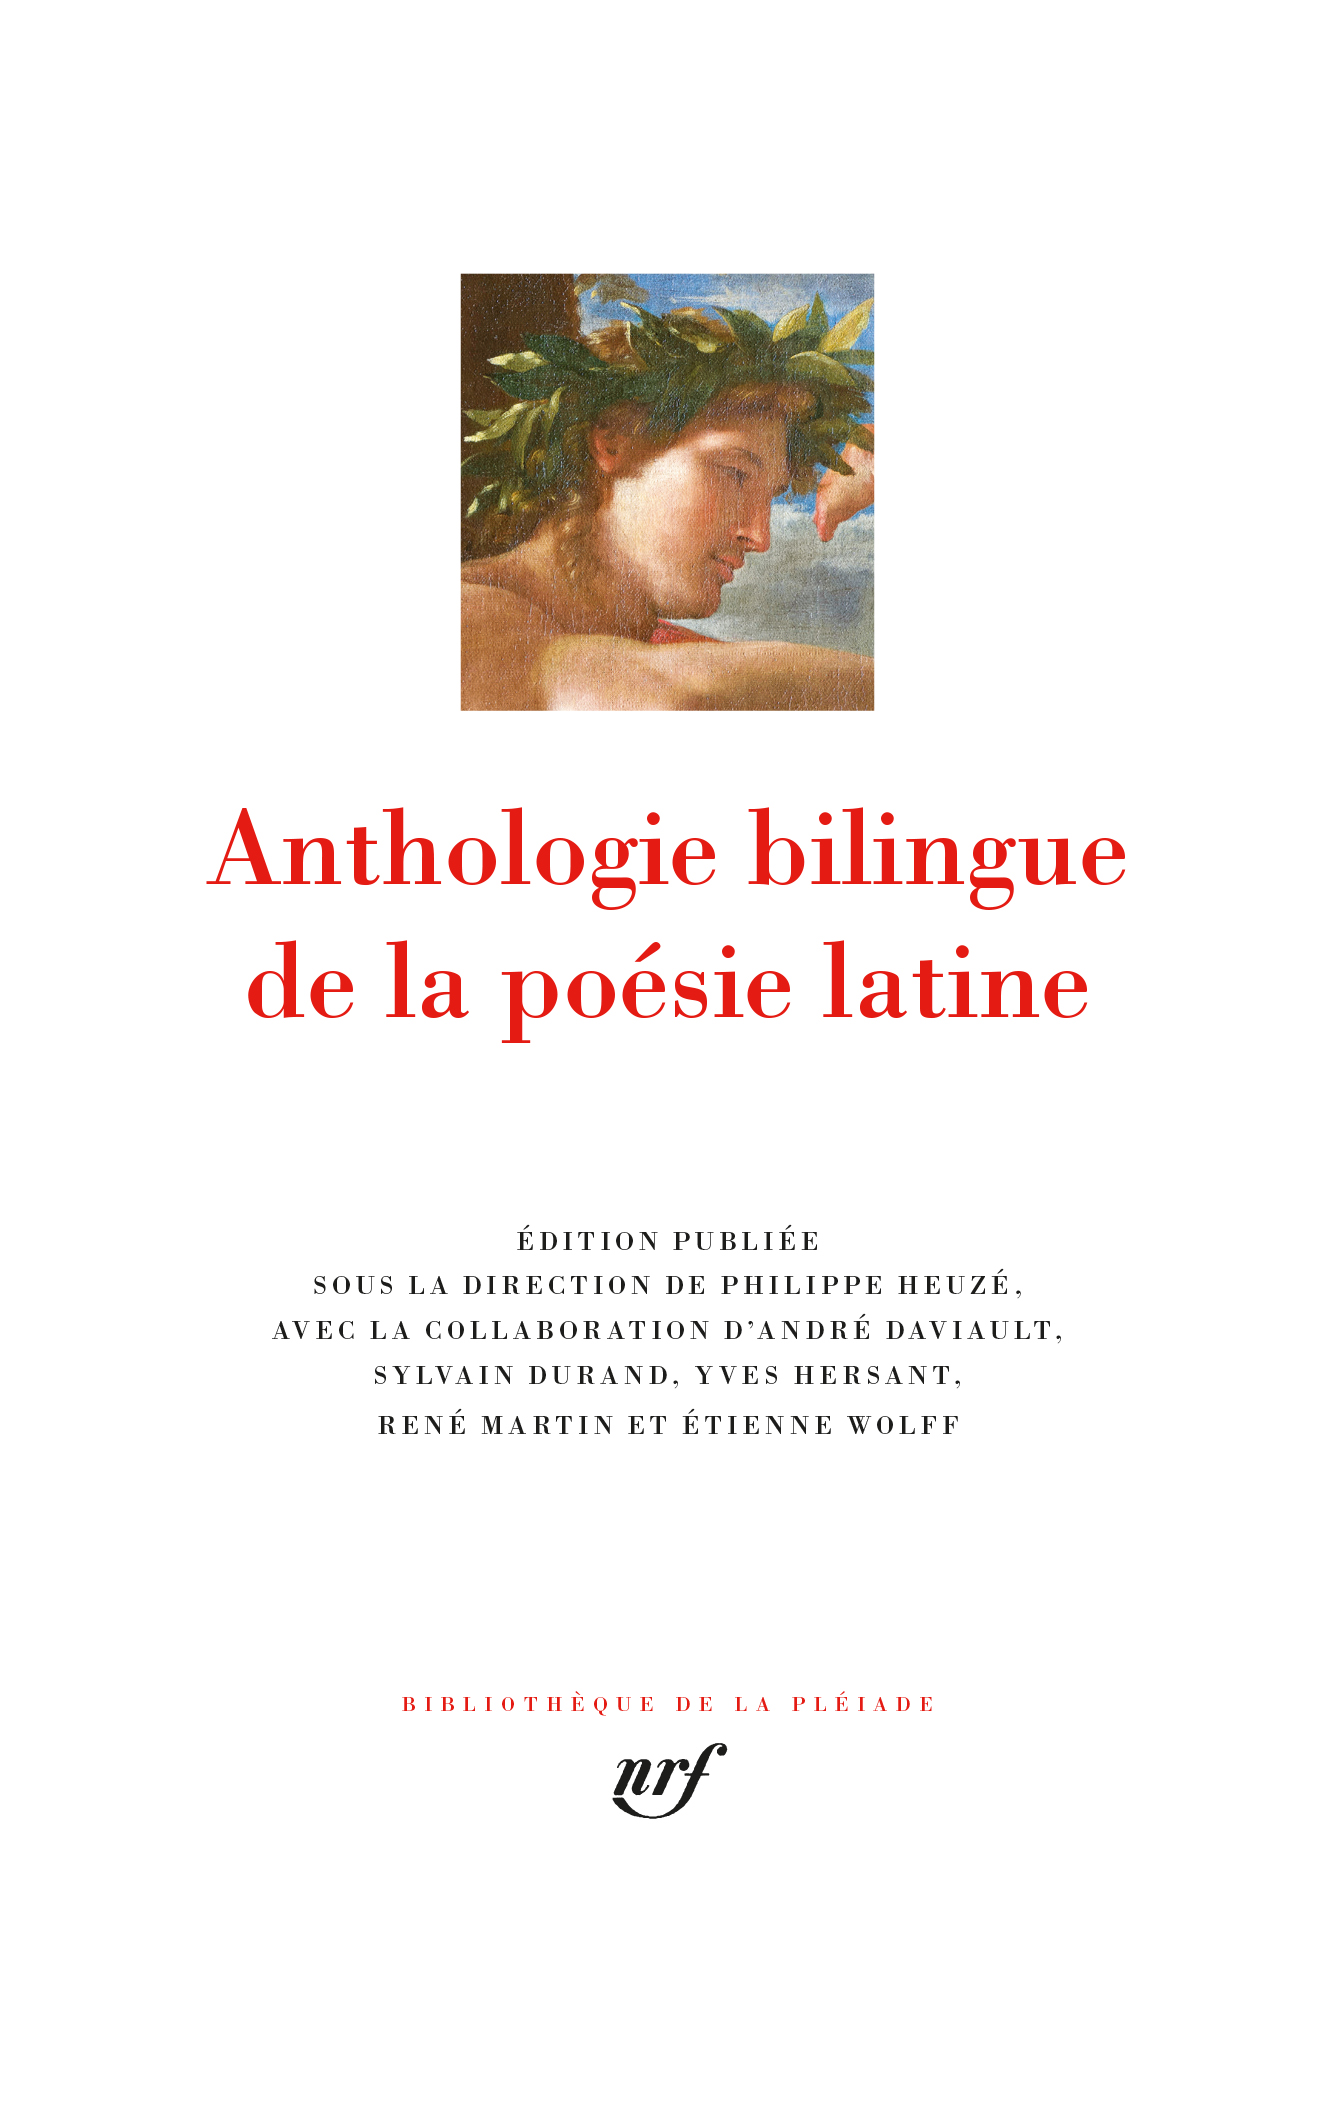 Anthologie bilingue de la poésie latine (Bibl. de la Pléiade)